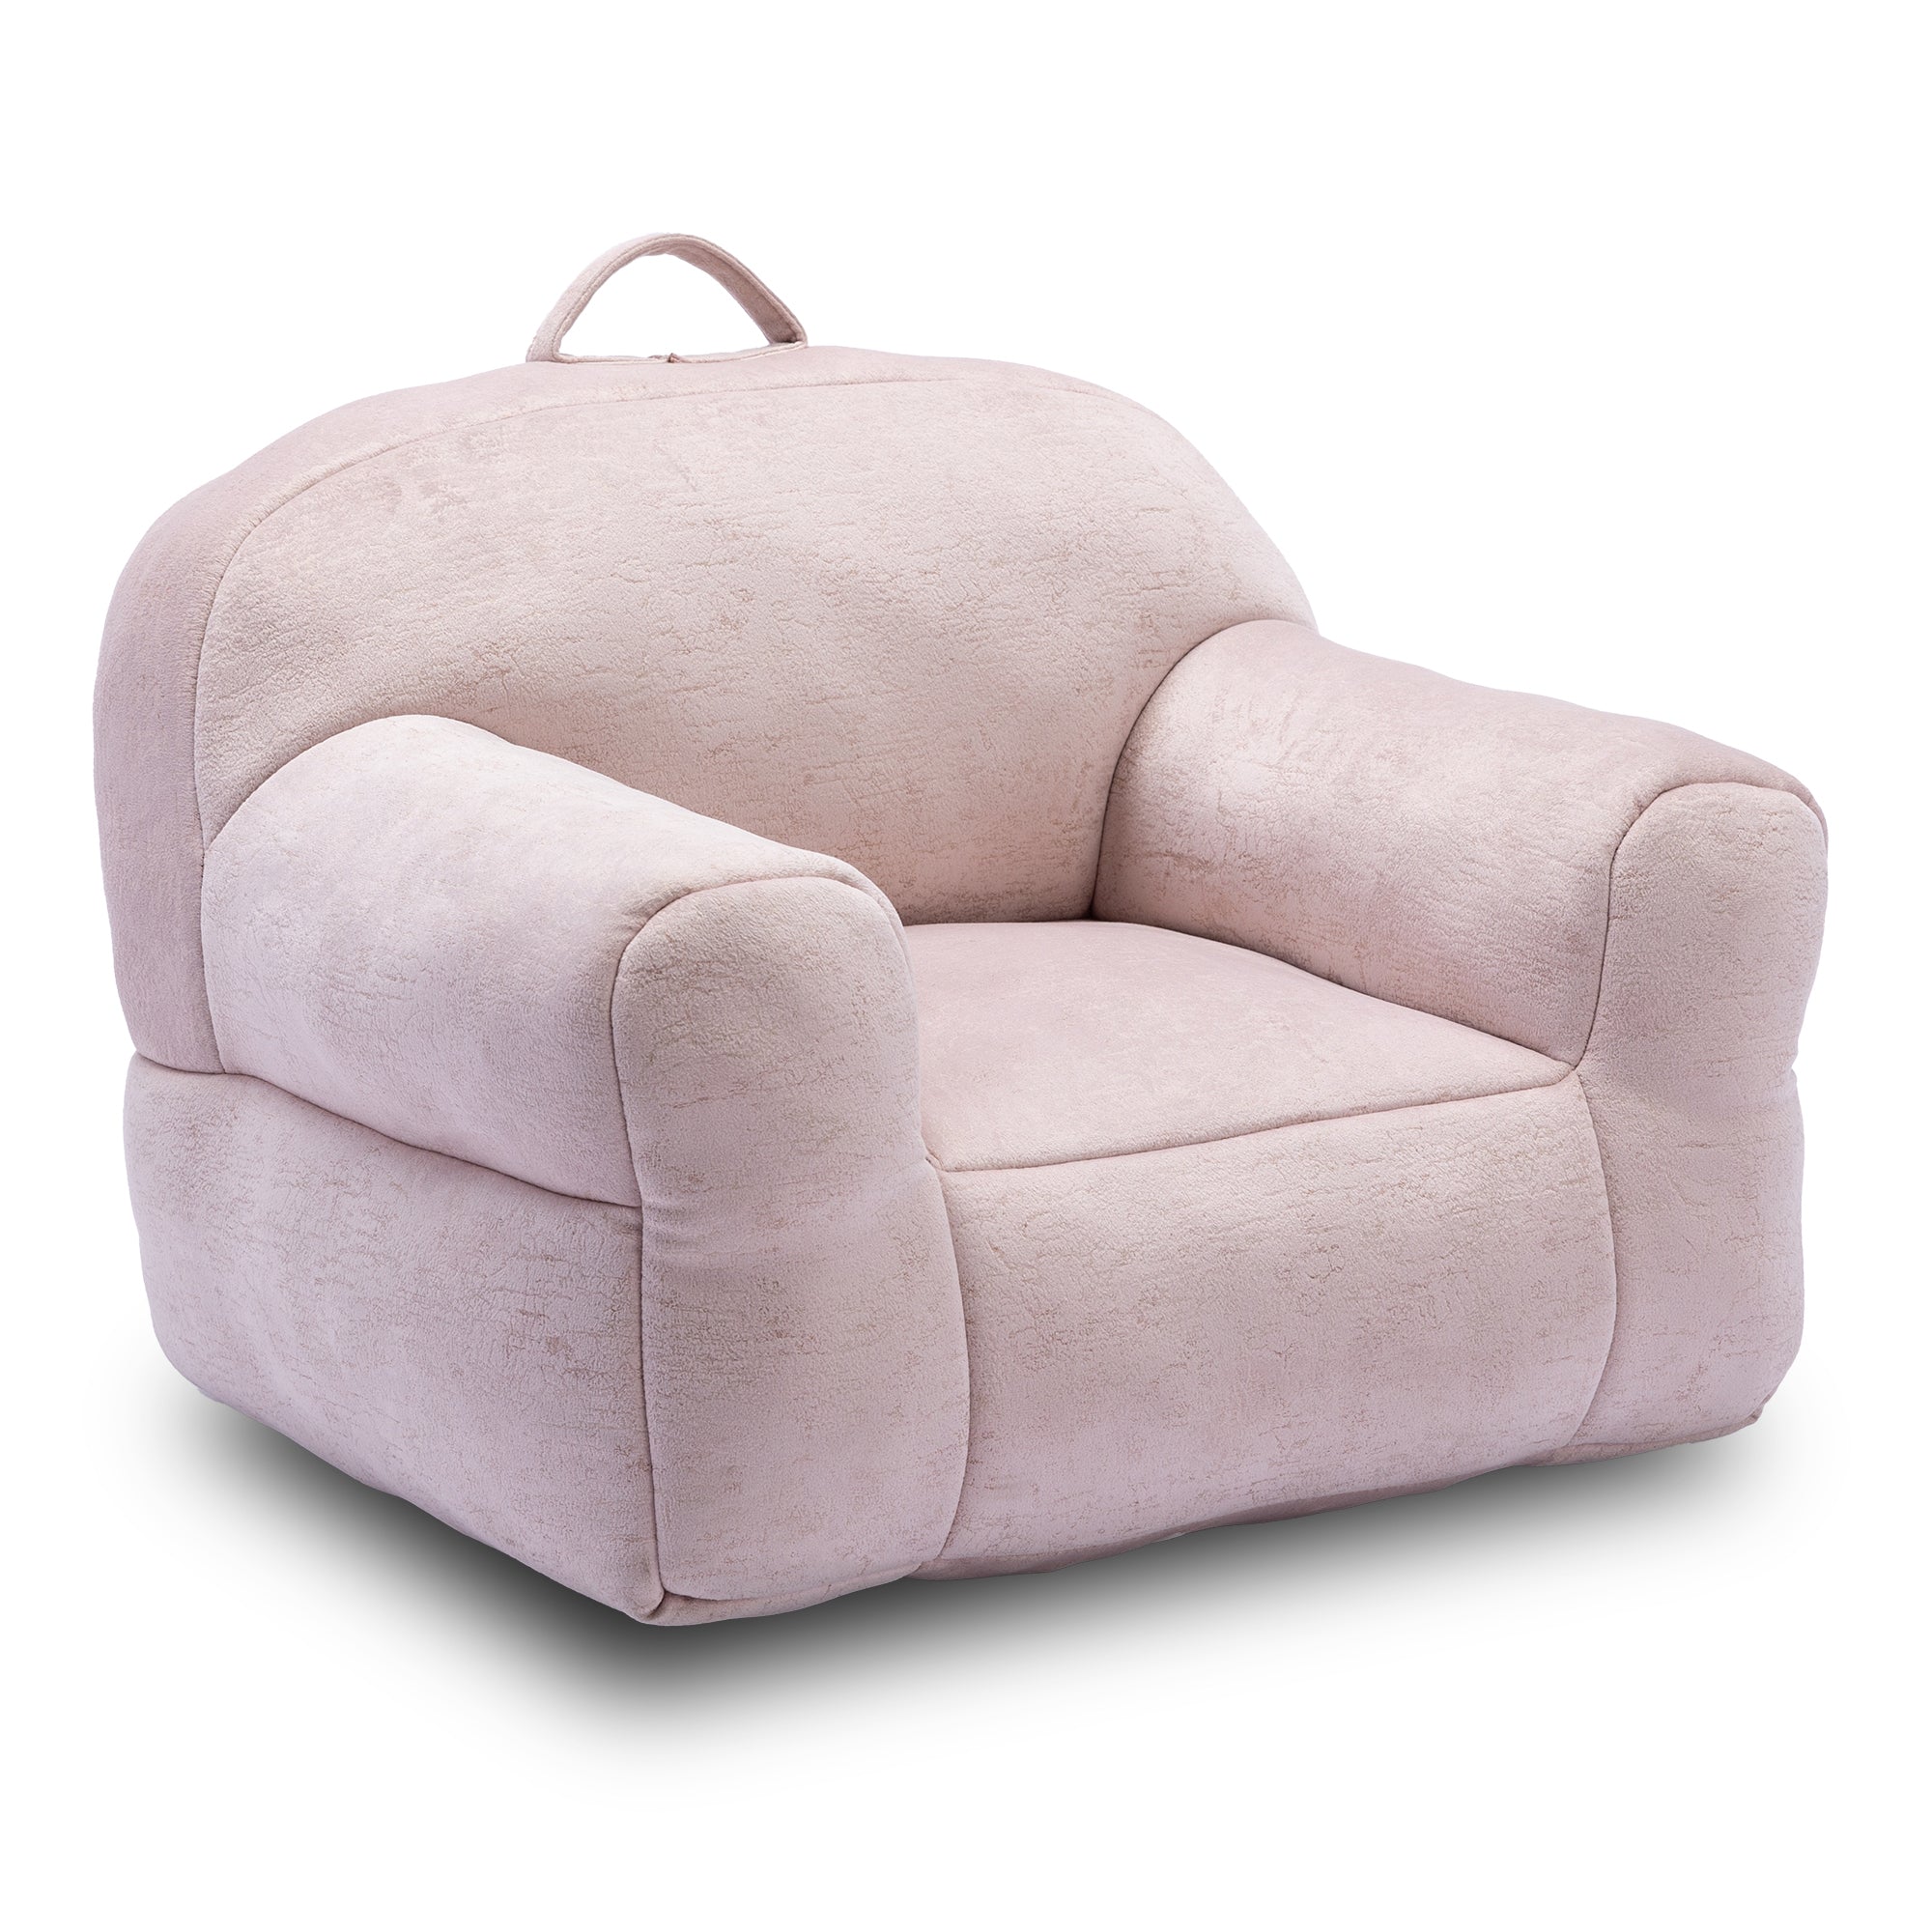 Kid's Velvet Memory Sponge Stuffed Bean Bag Chair (Pink)